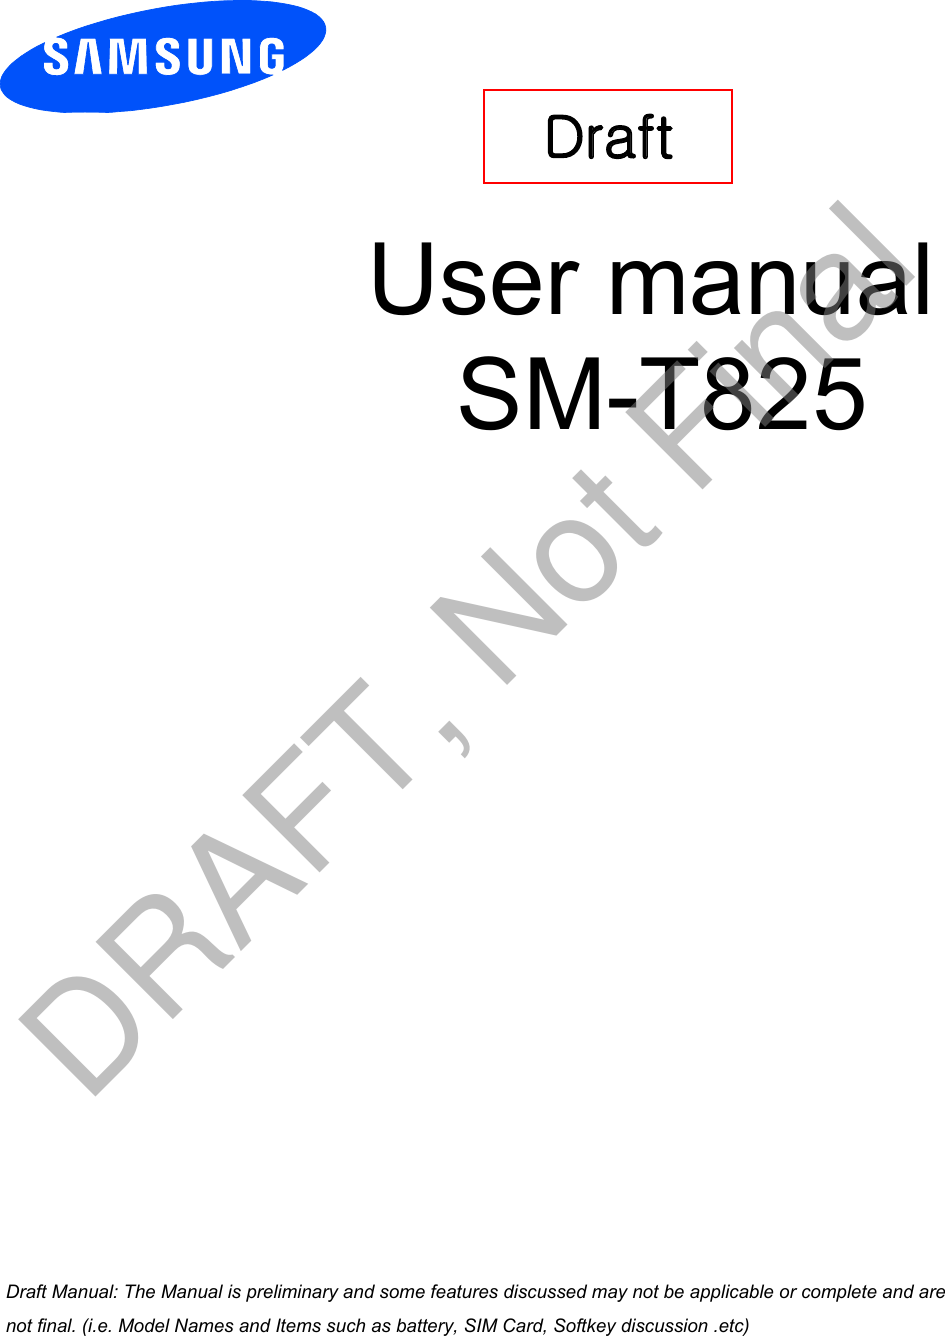 User manual SM-T825Draft a ana  ana  na and  a dd a n  aa   and a n na  d a and   a a  ad  dn DRAFT, Not Final